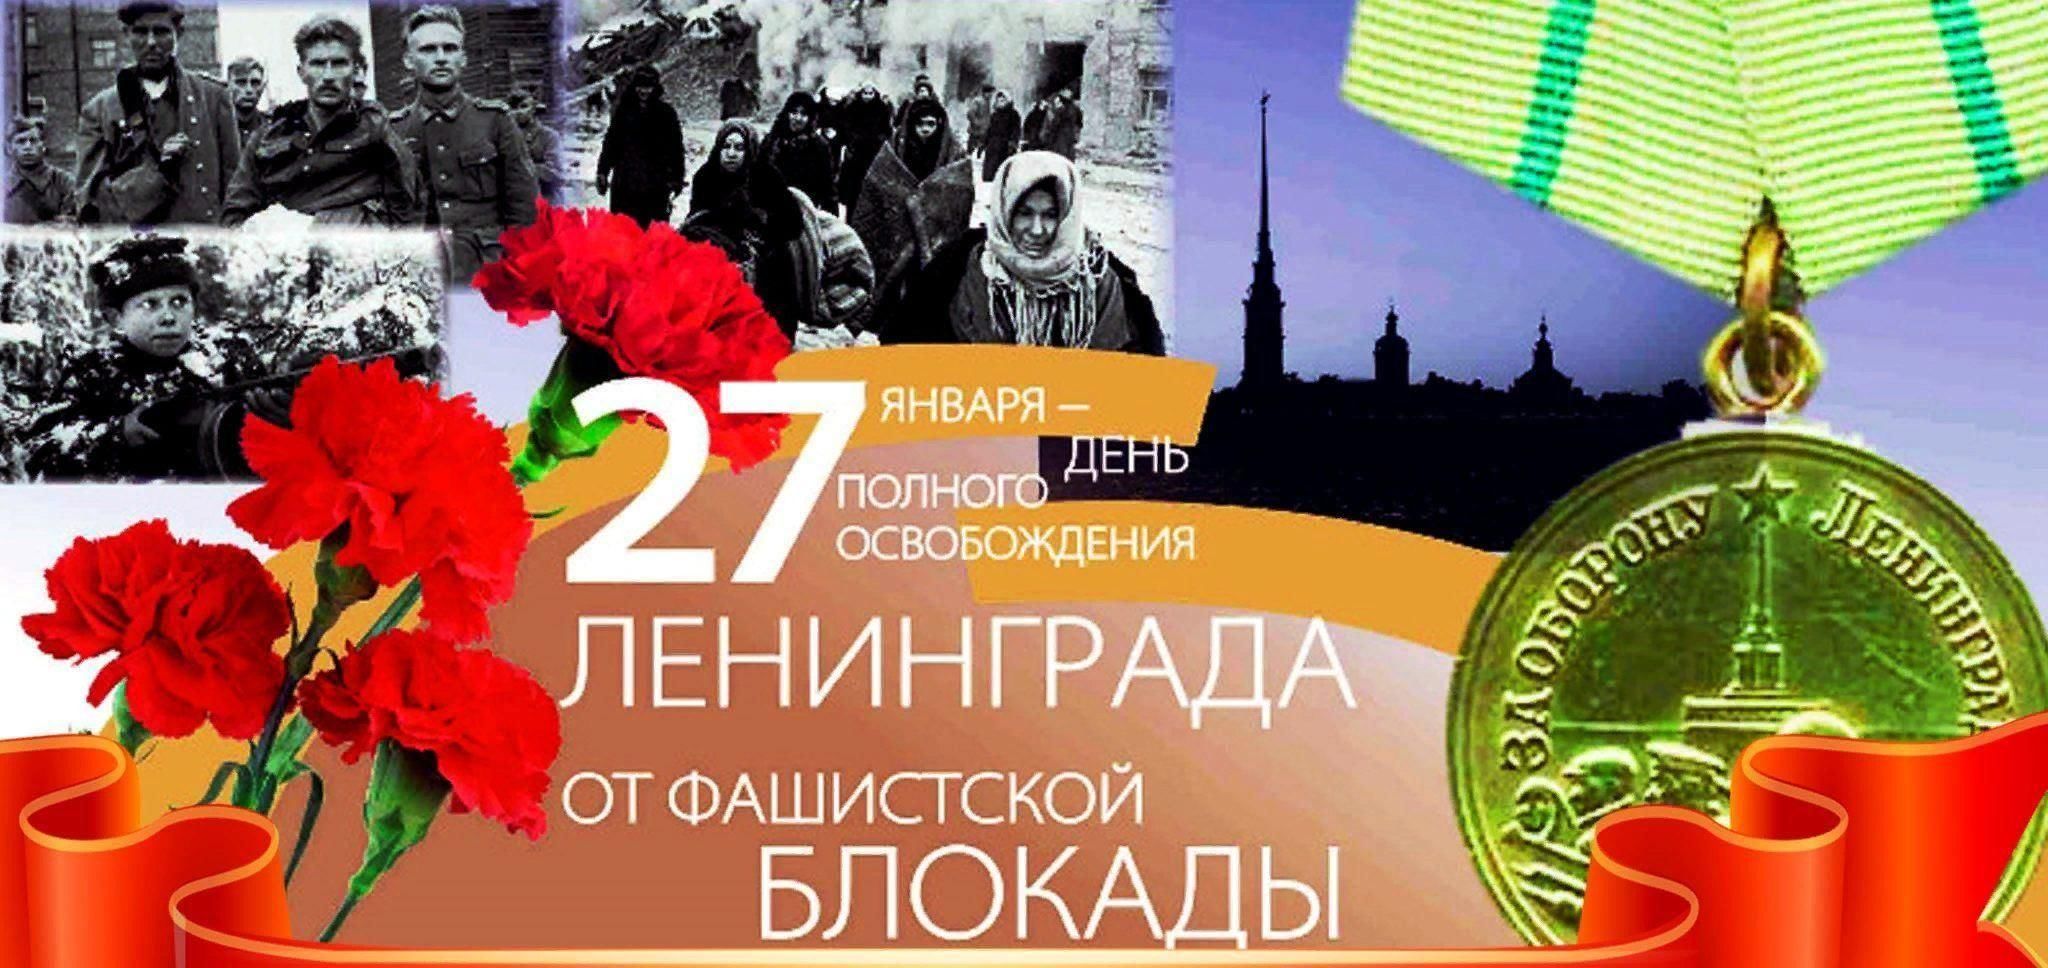 Снятие блокады Ленинграда Дата